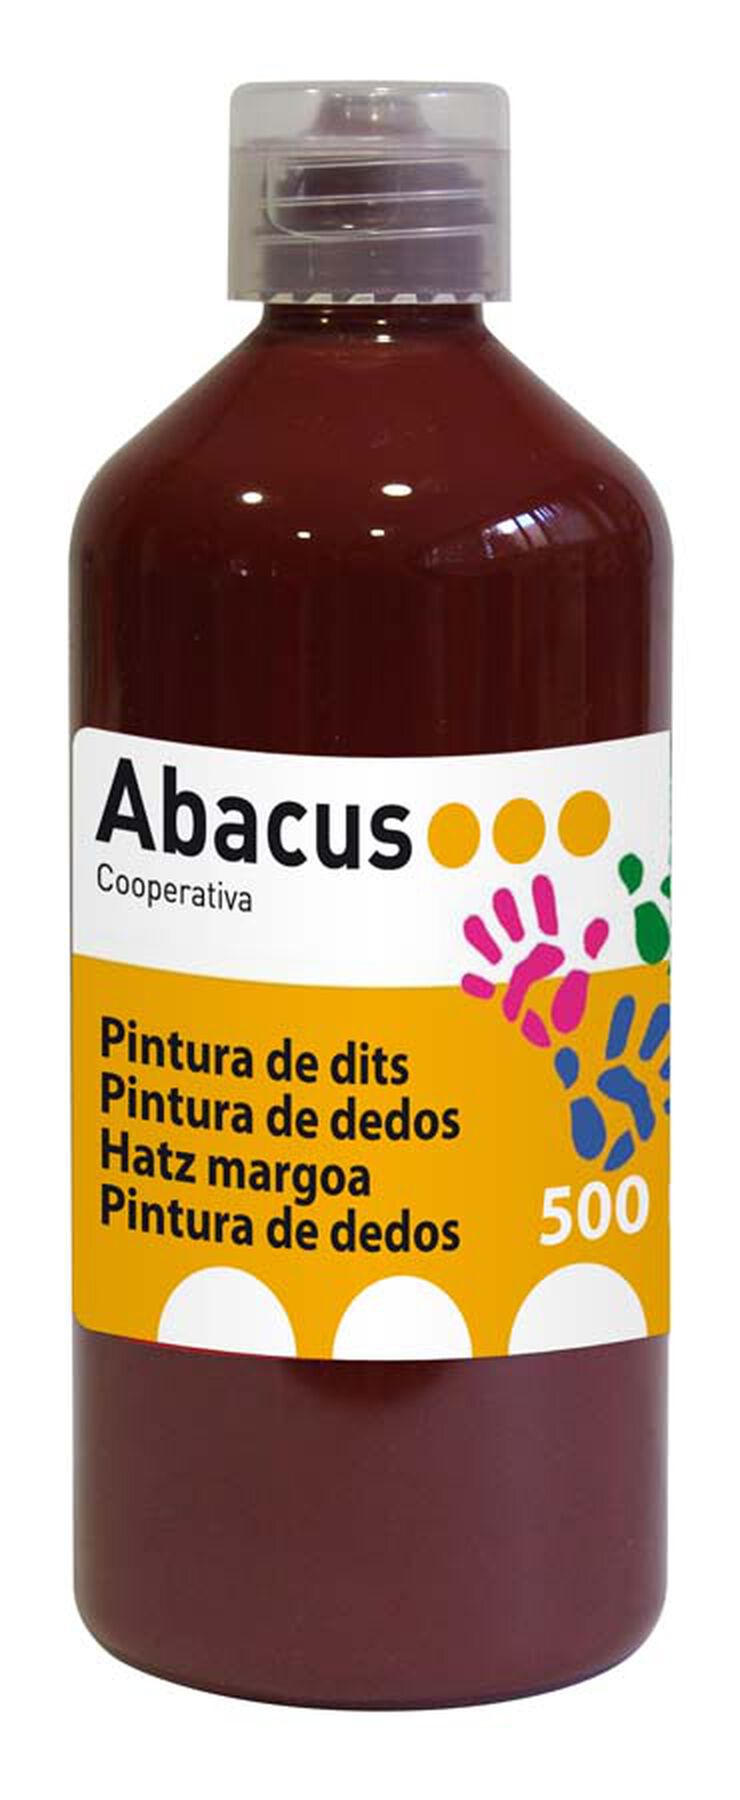 flexible Giro de vuelta Clip mariposa Pintura de dedos Abacus 500 ml marrón - Abacus Online